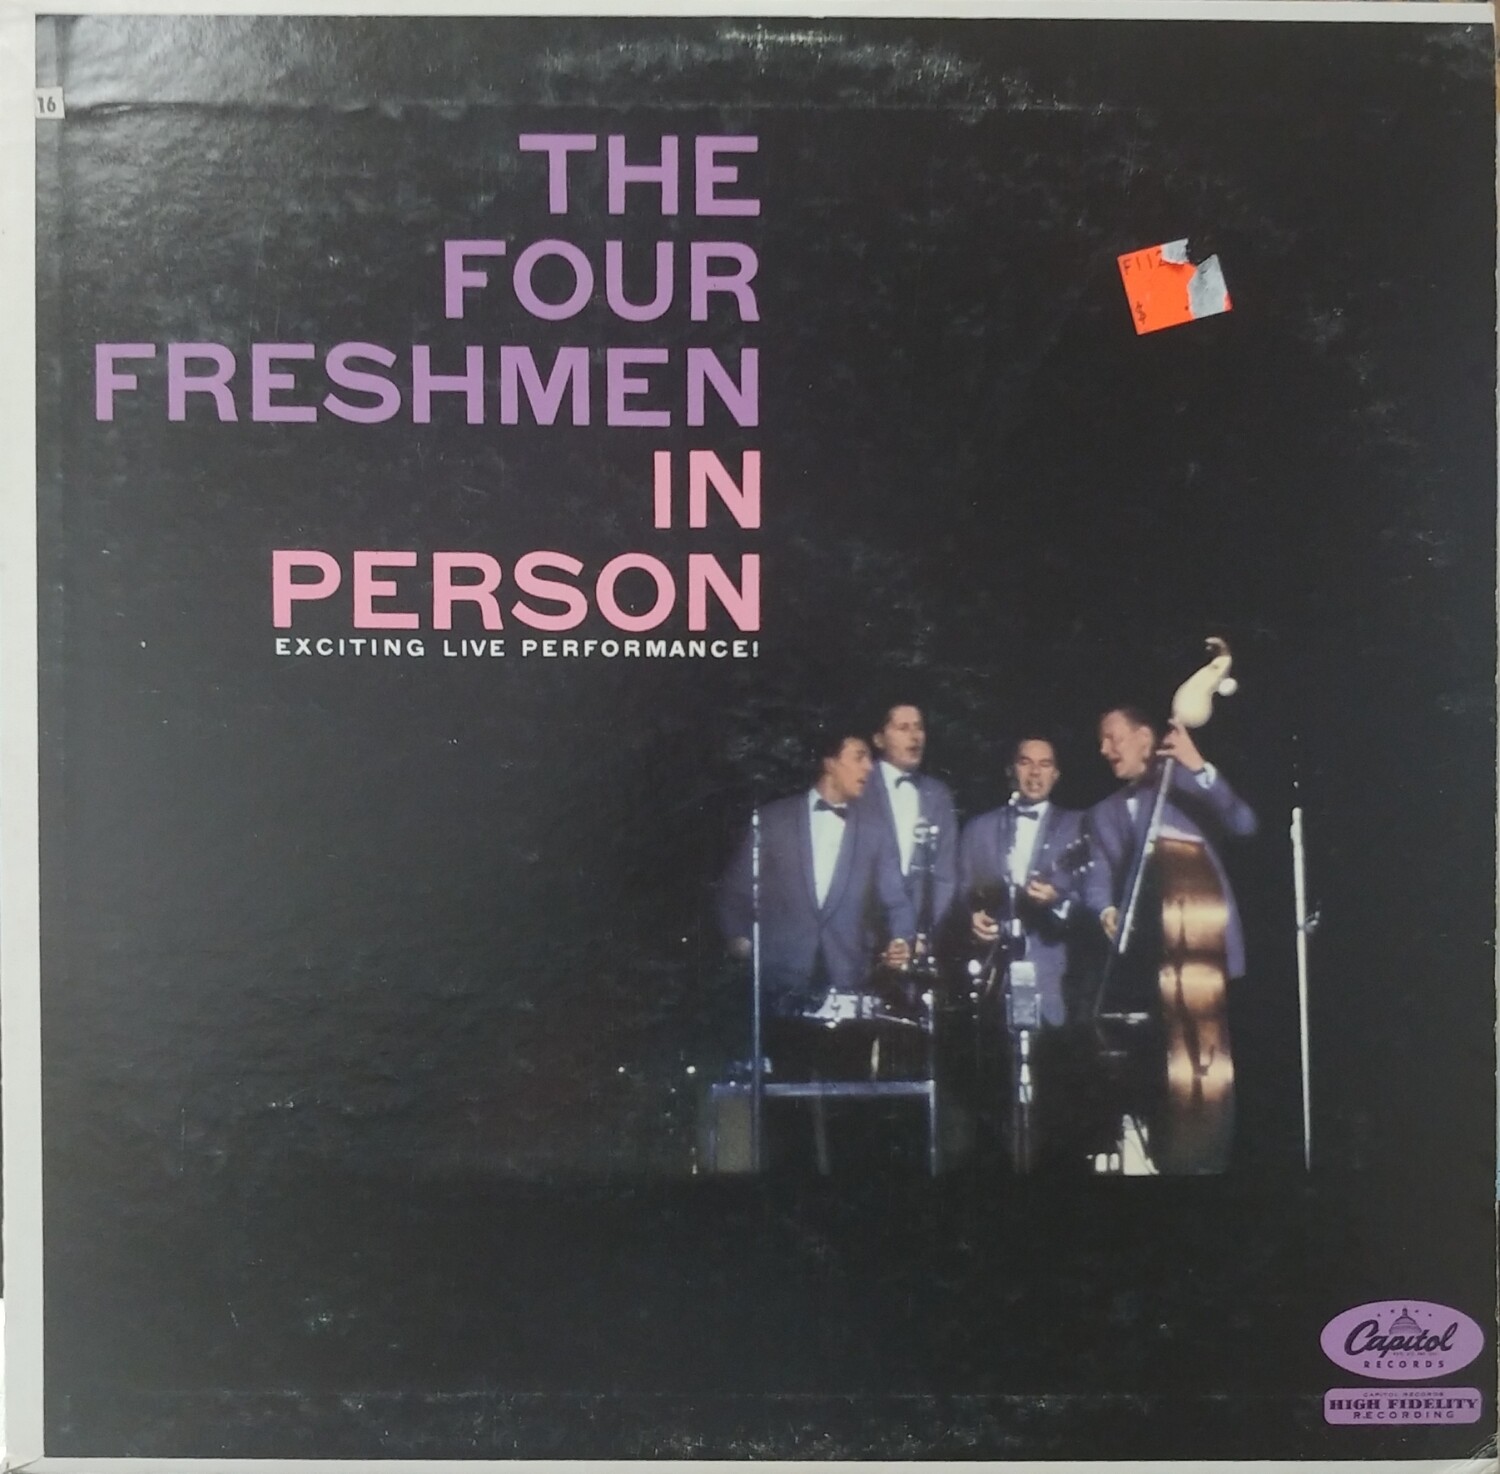 The Four Freshmen - The Four Freshmen in person